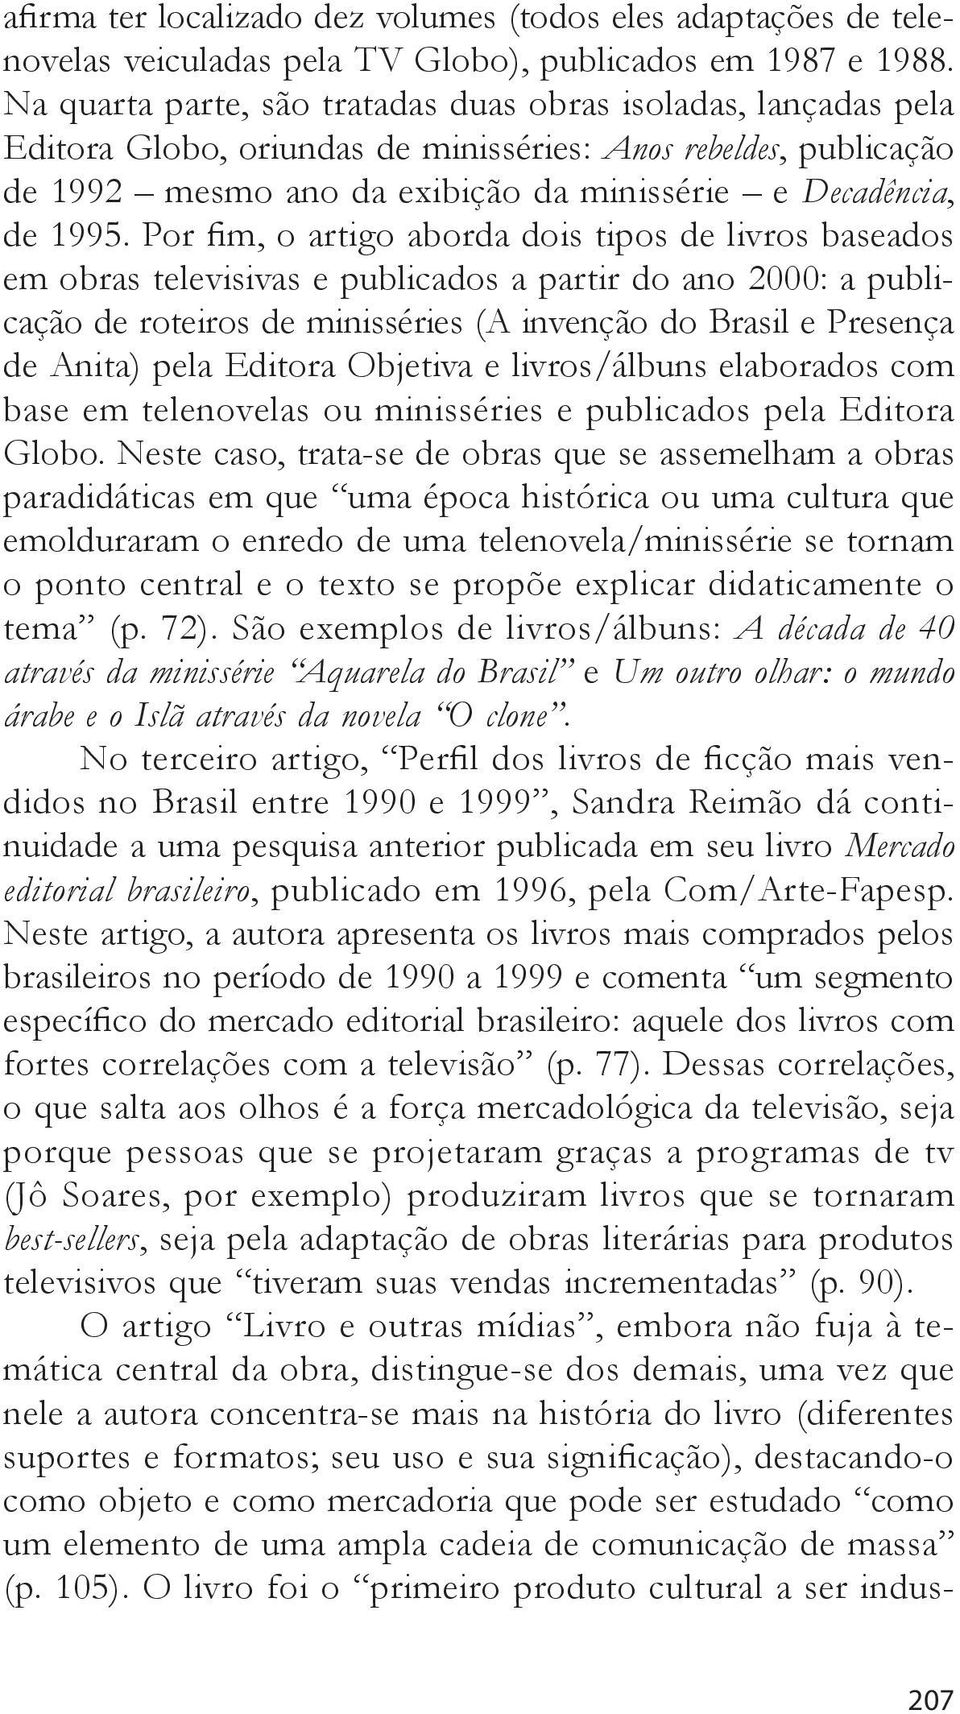 Por fim, o artigo aborda dois tipos de livros baseados em obras televisivas e publicados a partir do ano 2000: a publicação de roteiros de minisséries (A invenção do Brasil e Presença de Anita) pela